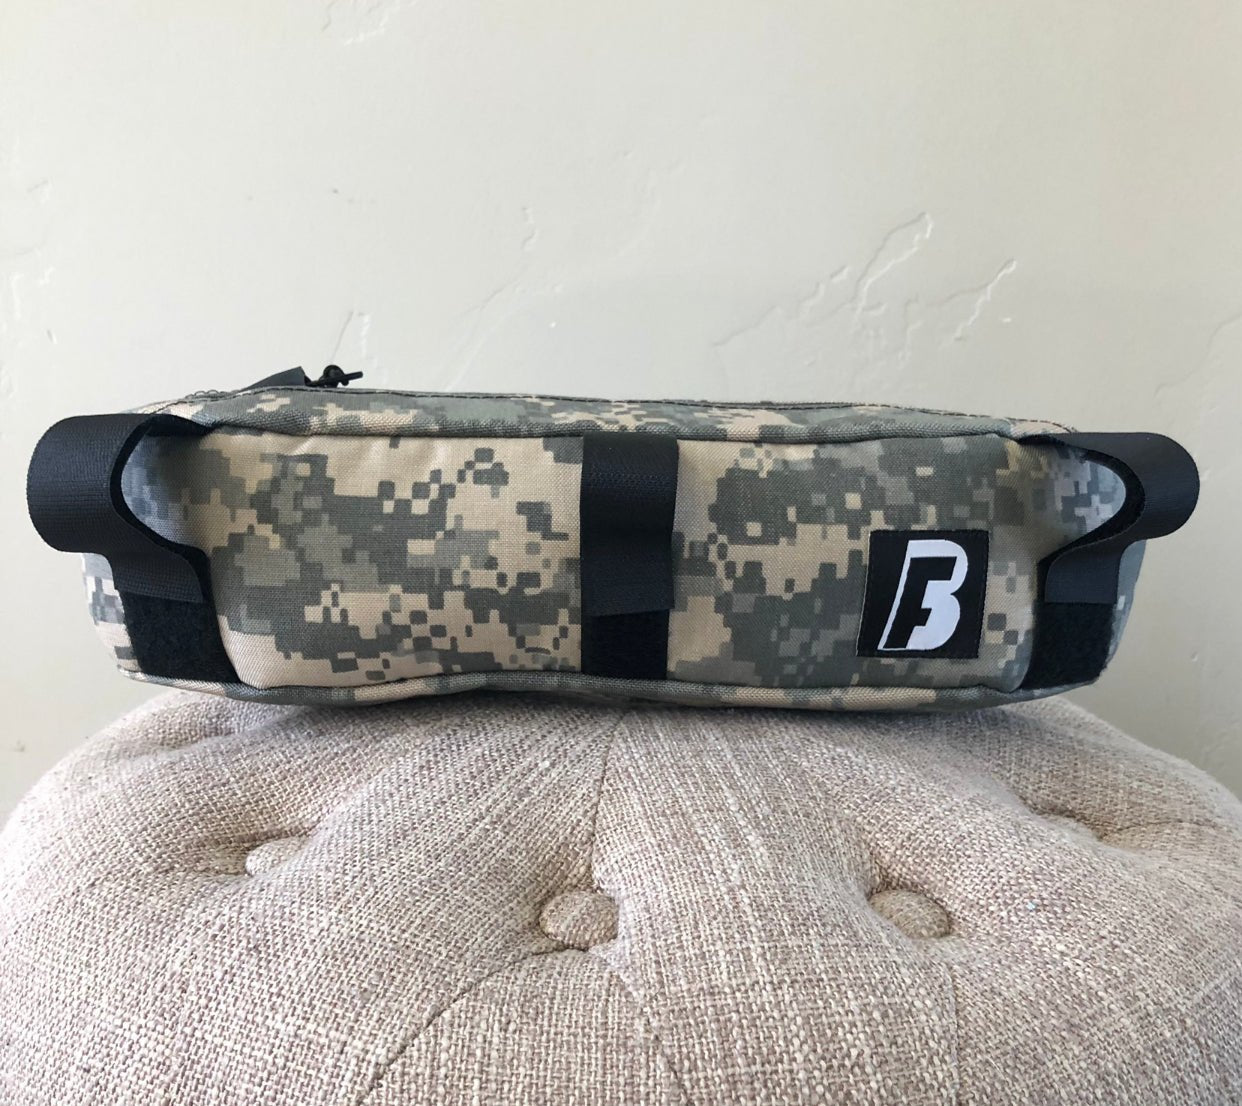 Handlebar bag for Jones Bar - BroadFork Bags